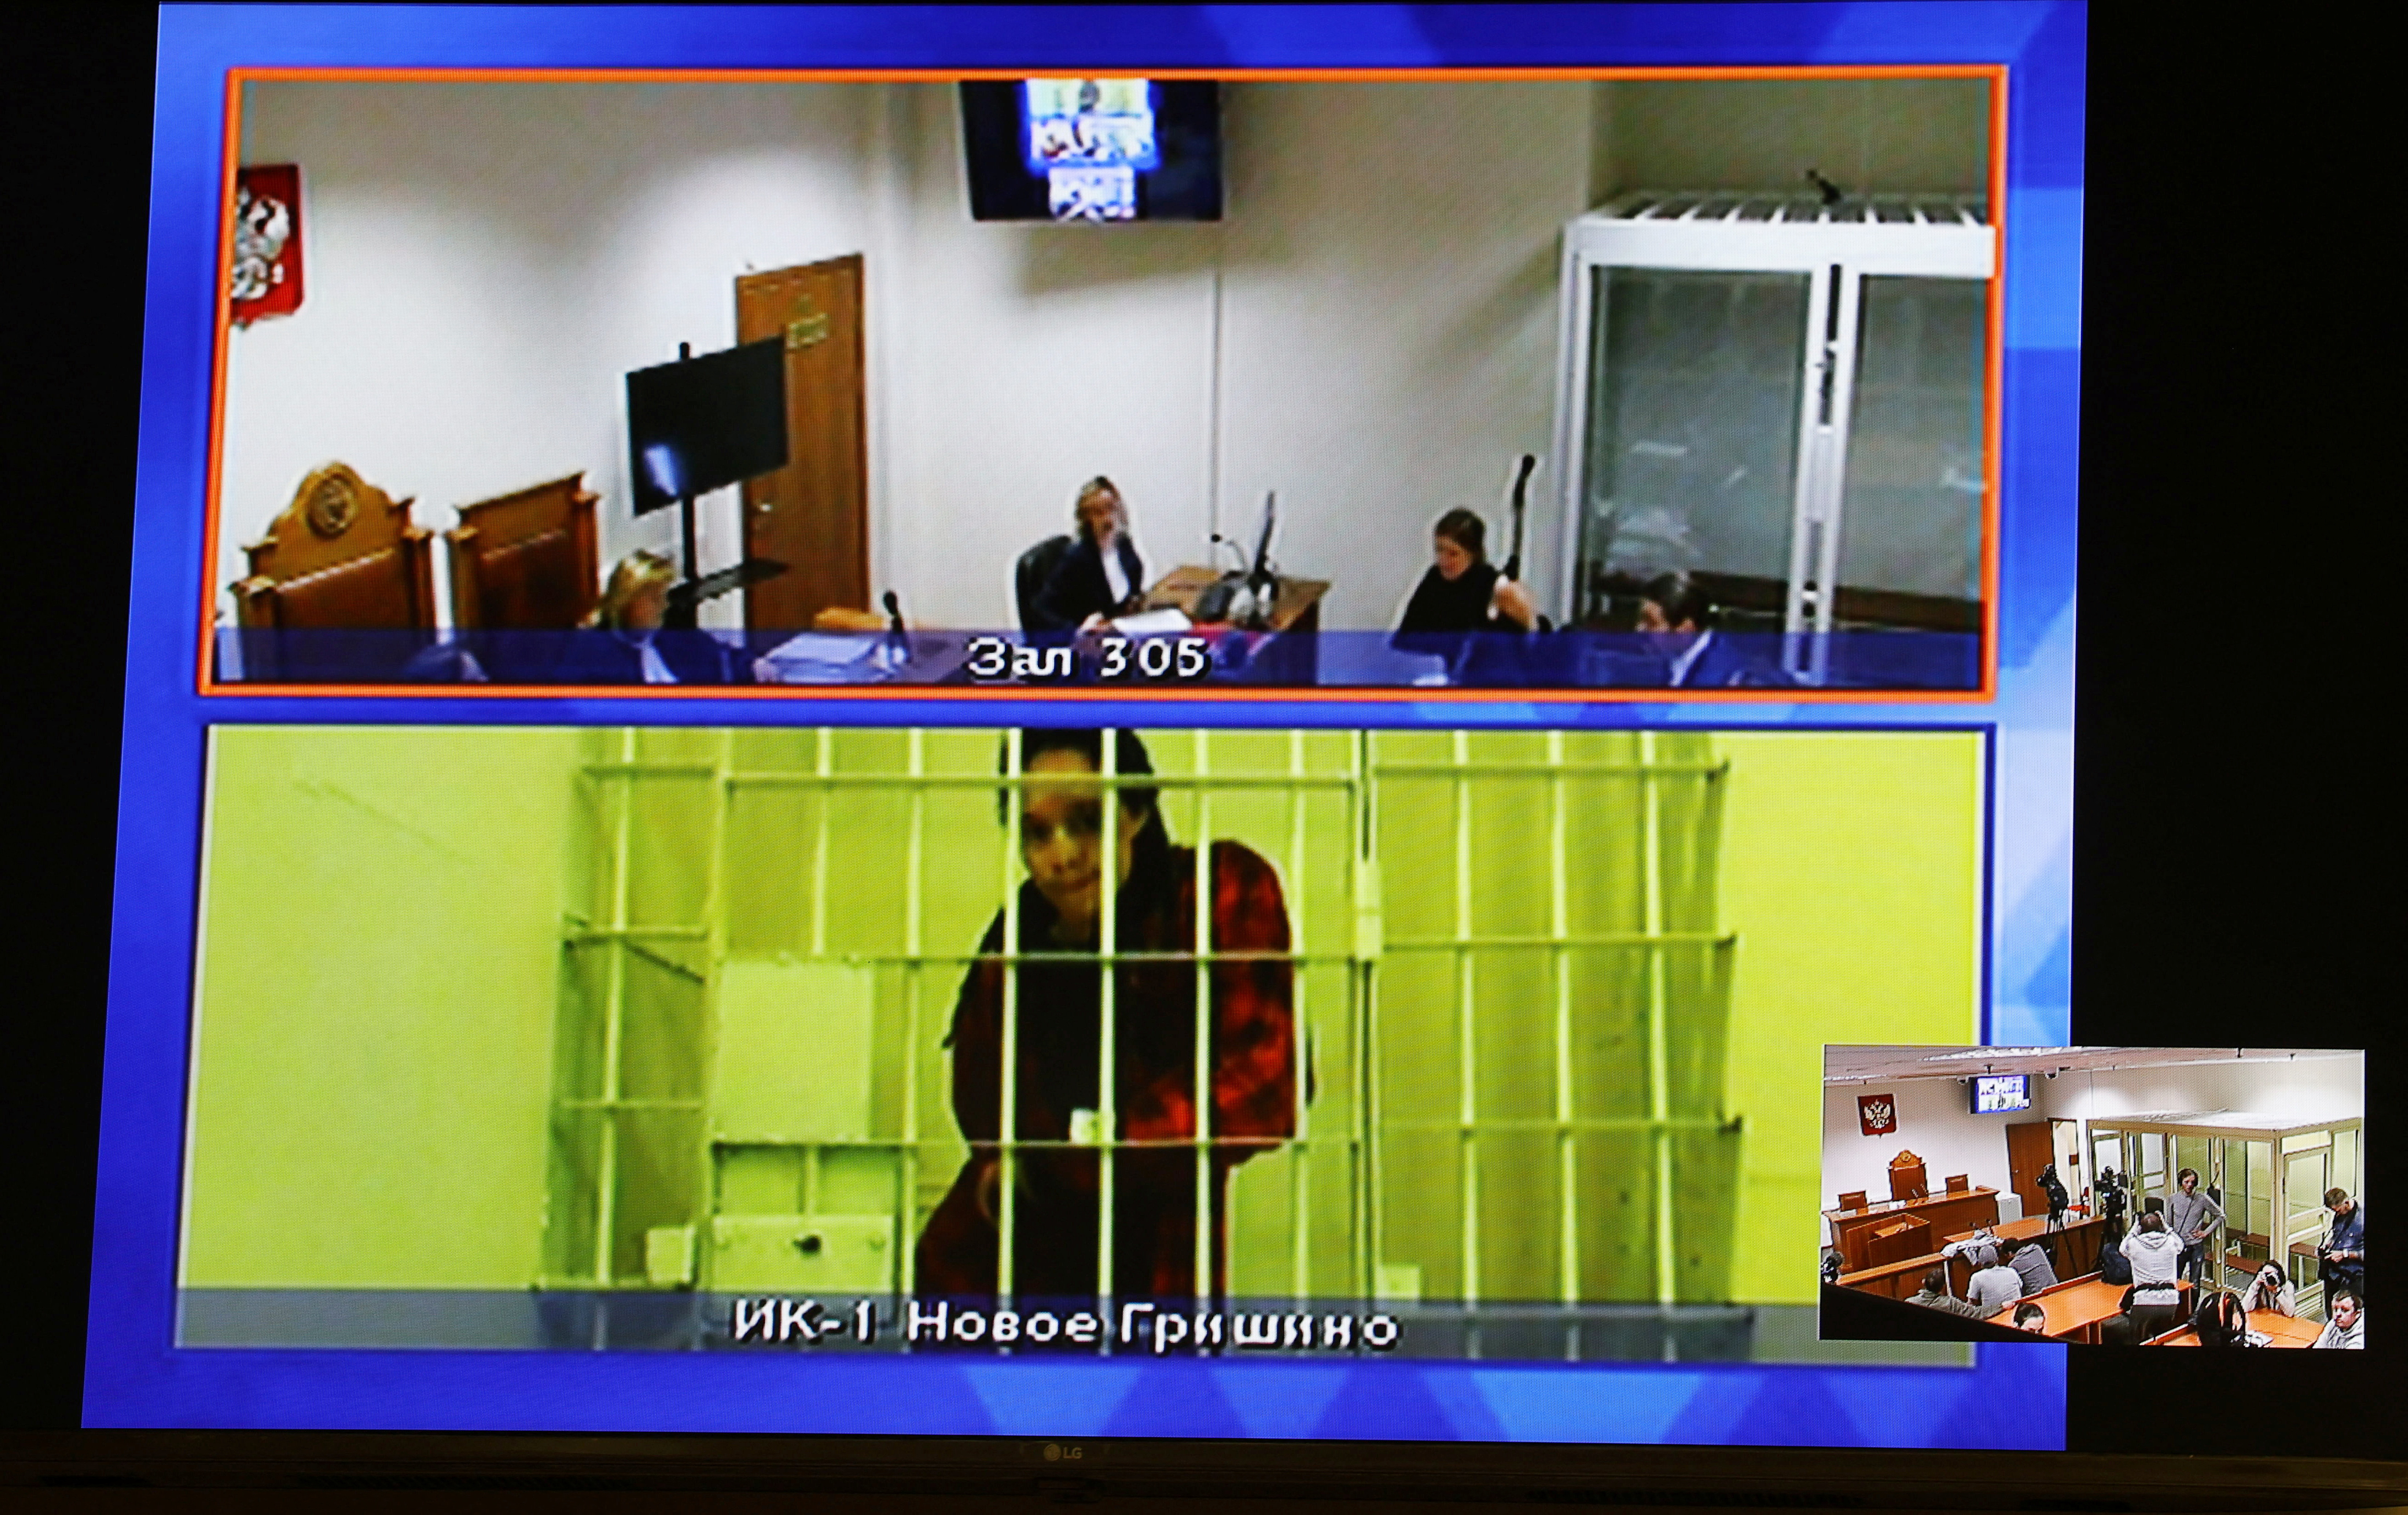 Brittney Griner aparece en una pantalla a través de una conexión de vídeo desde el centro de detención durante una audiencia judicial para considerar una apelación contra su sentencia de prisión, en Krasnogorsk, región de Moscú, Rusia 25 de octubre de 2022. REUTERS/Evgenia Novozhenina